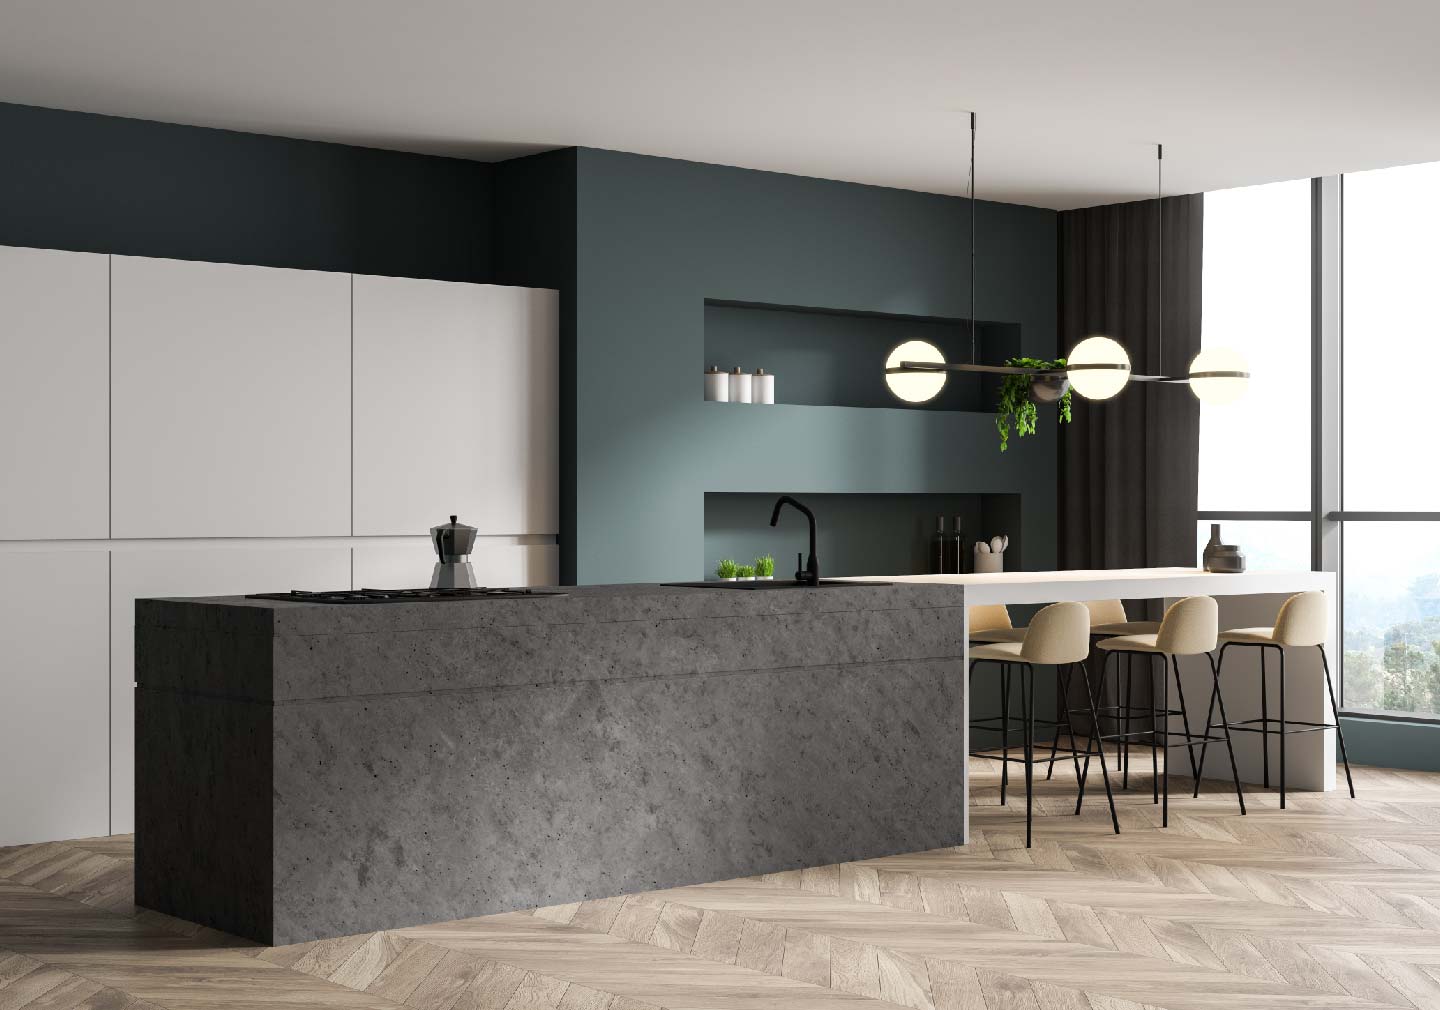 dark theme kitchen interior design with dining area